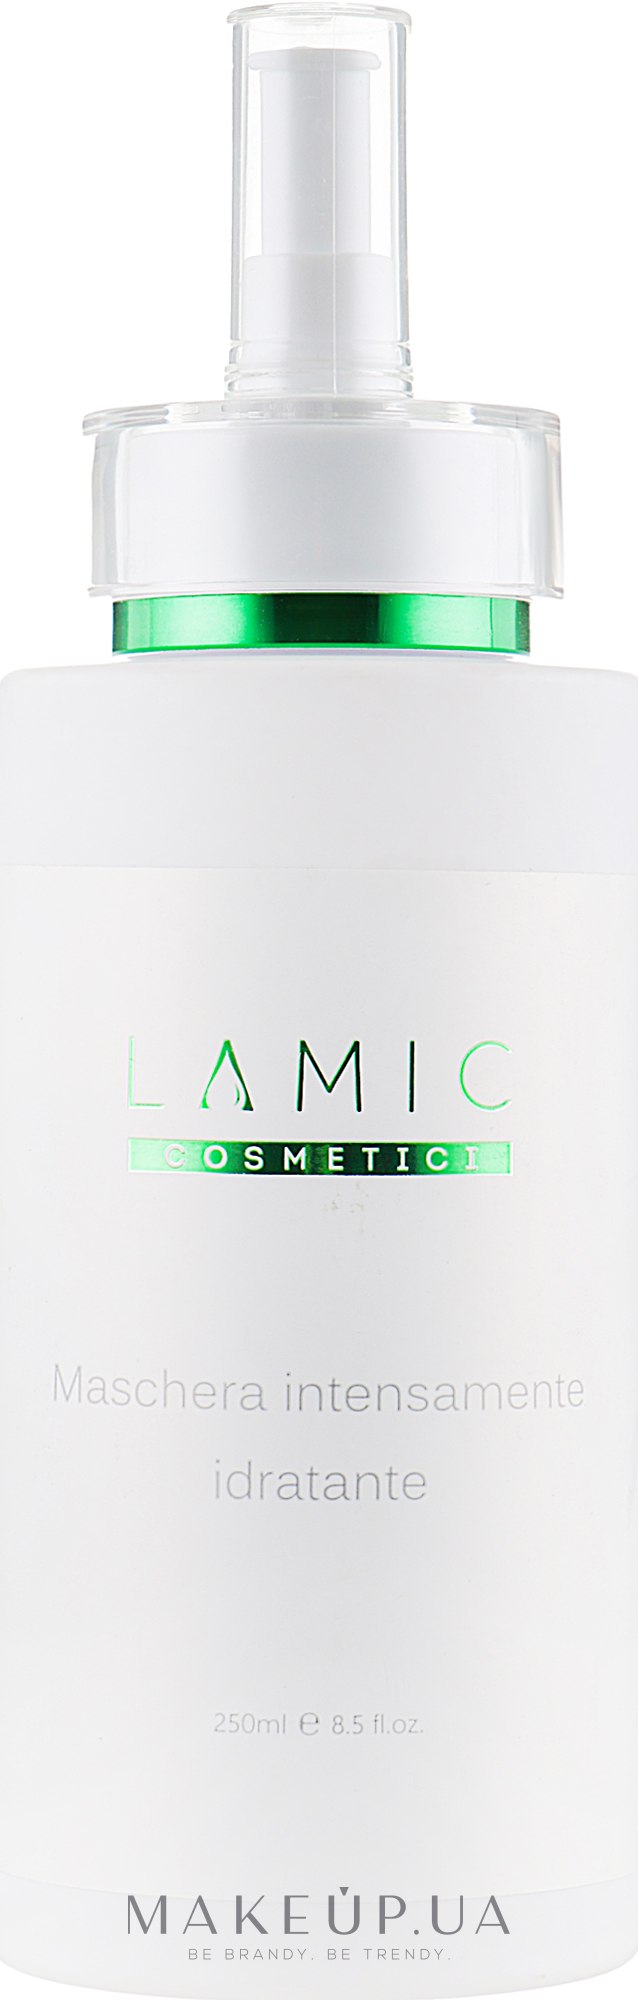 Інтенсивно зволожувальна маска - Lamic Cosmetici Maschera Intensamente Idratante — фото 250ml